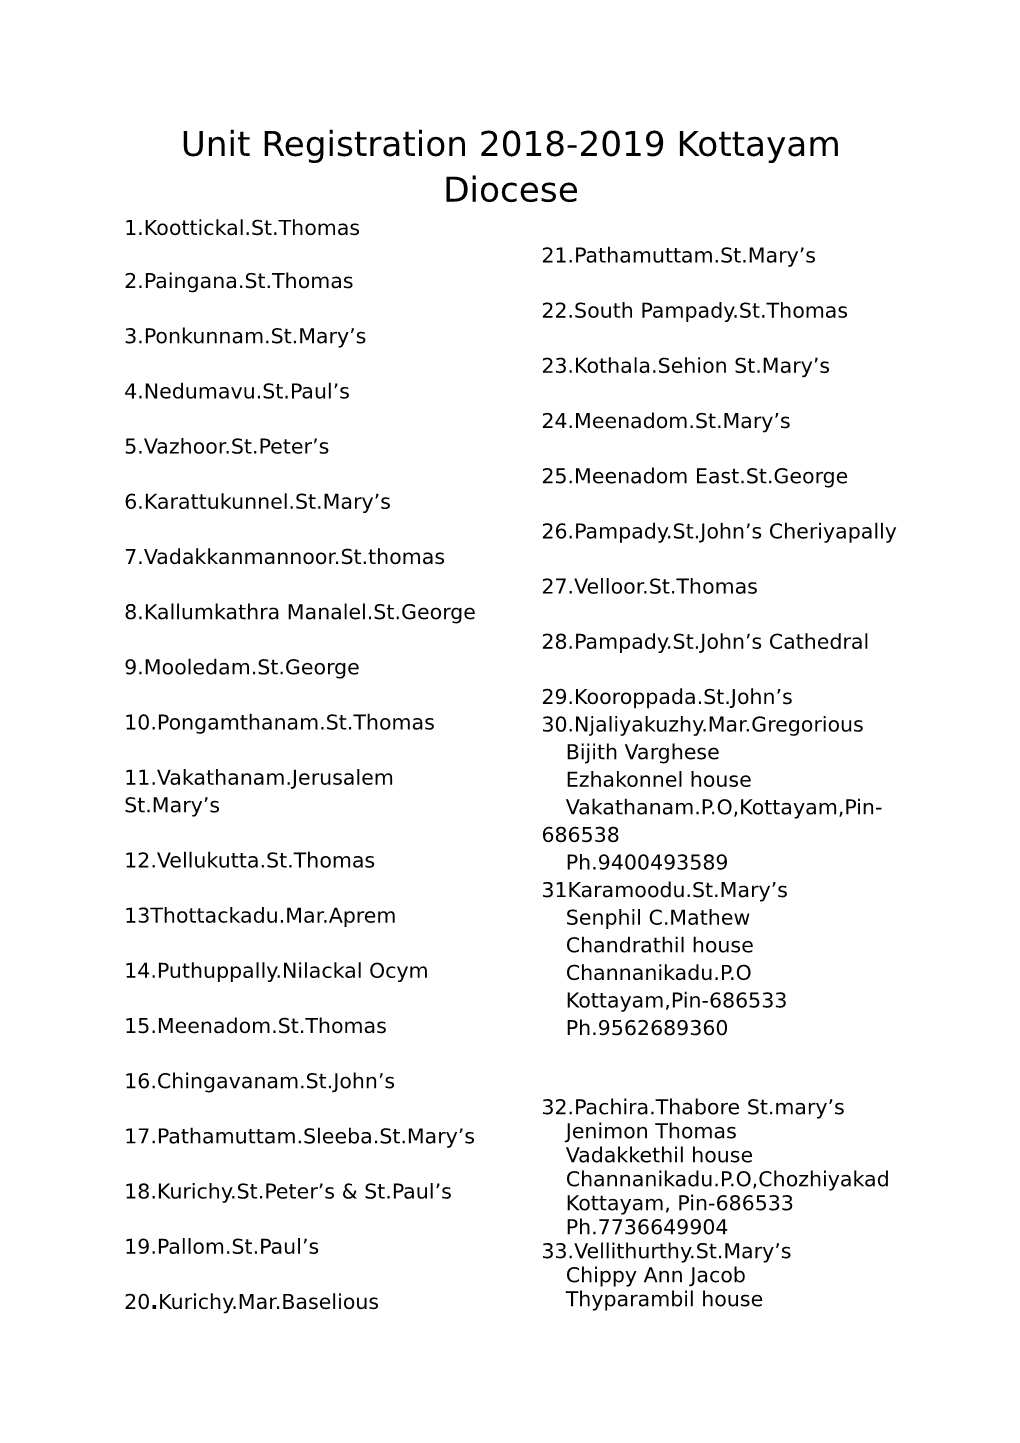 Unit Registration 2018-2019 Kottayam Diocese